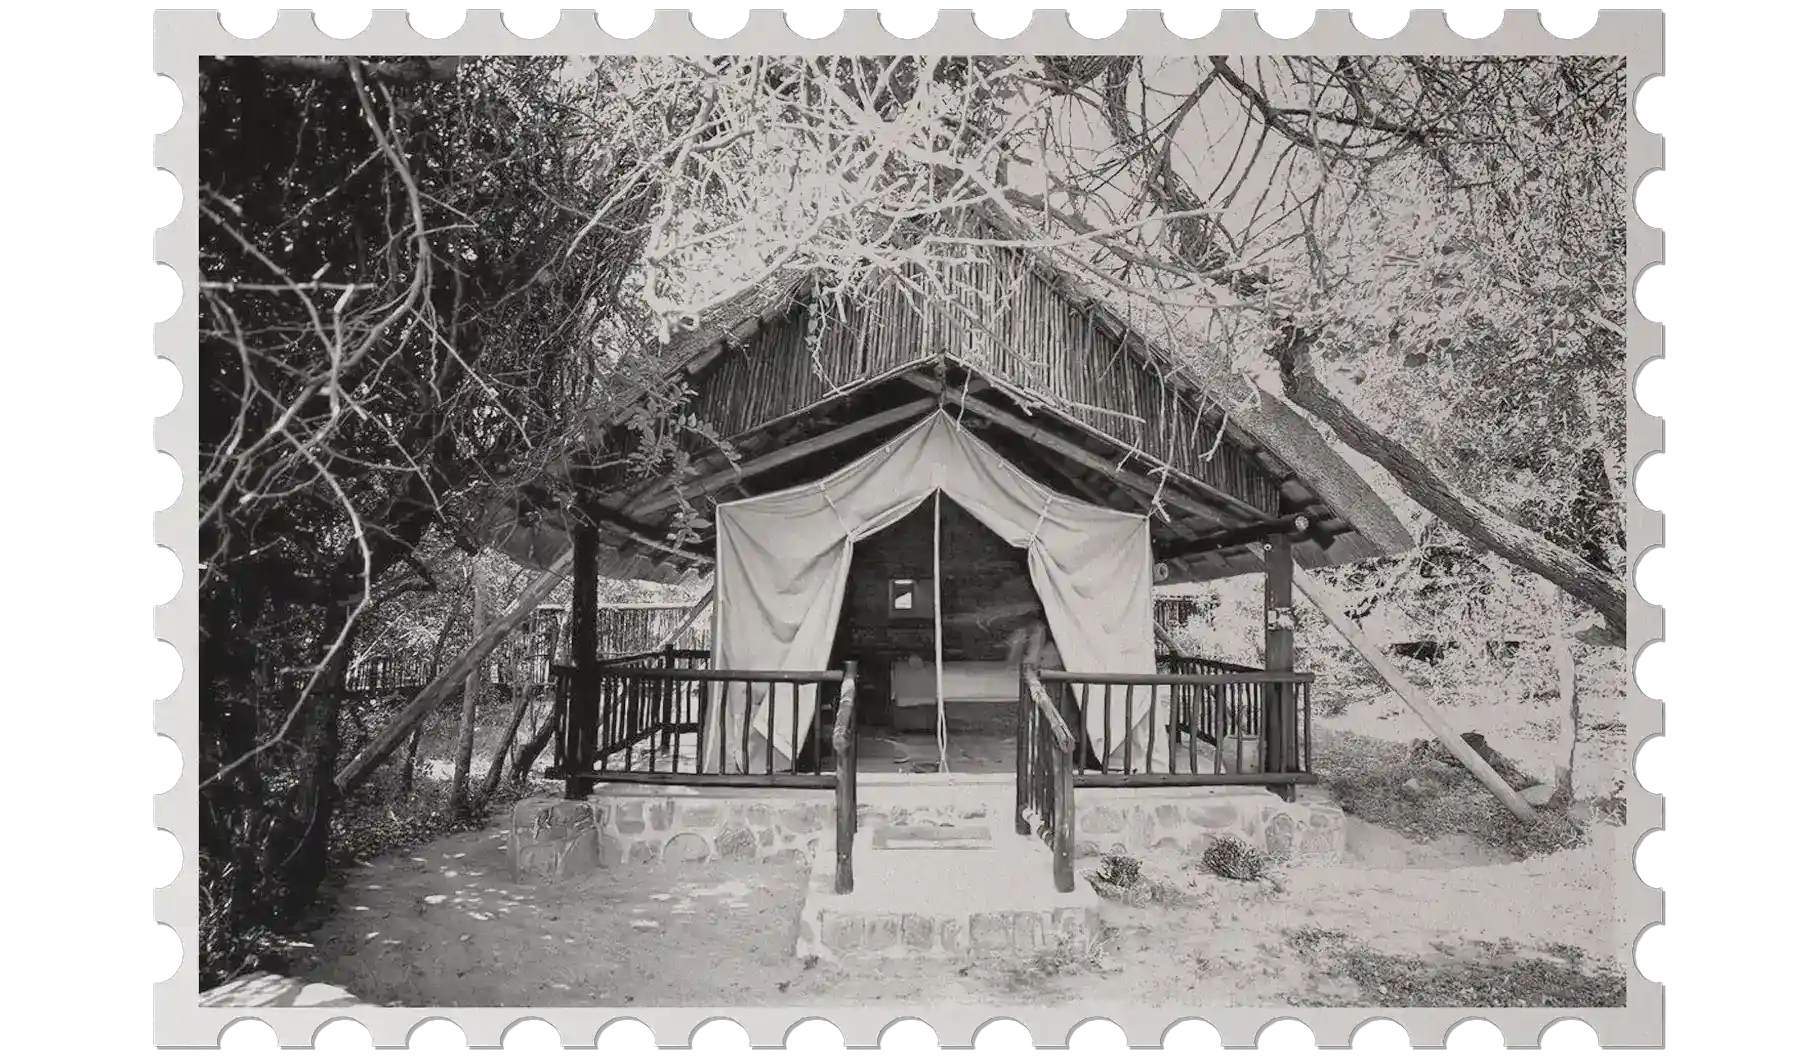 Schwarz-Weiß-Bild eines komfortablen Safarizeltes im Basislager des Dabchick-Reservats im Retro-Briefmarken-Look